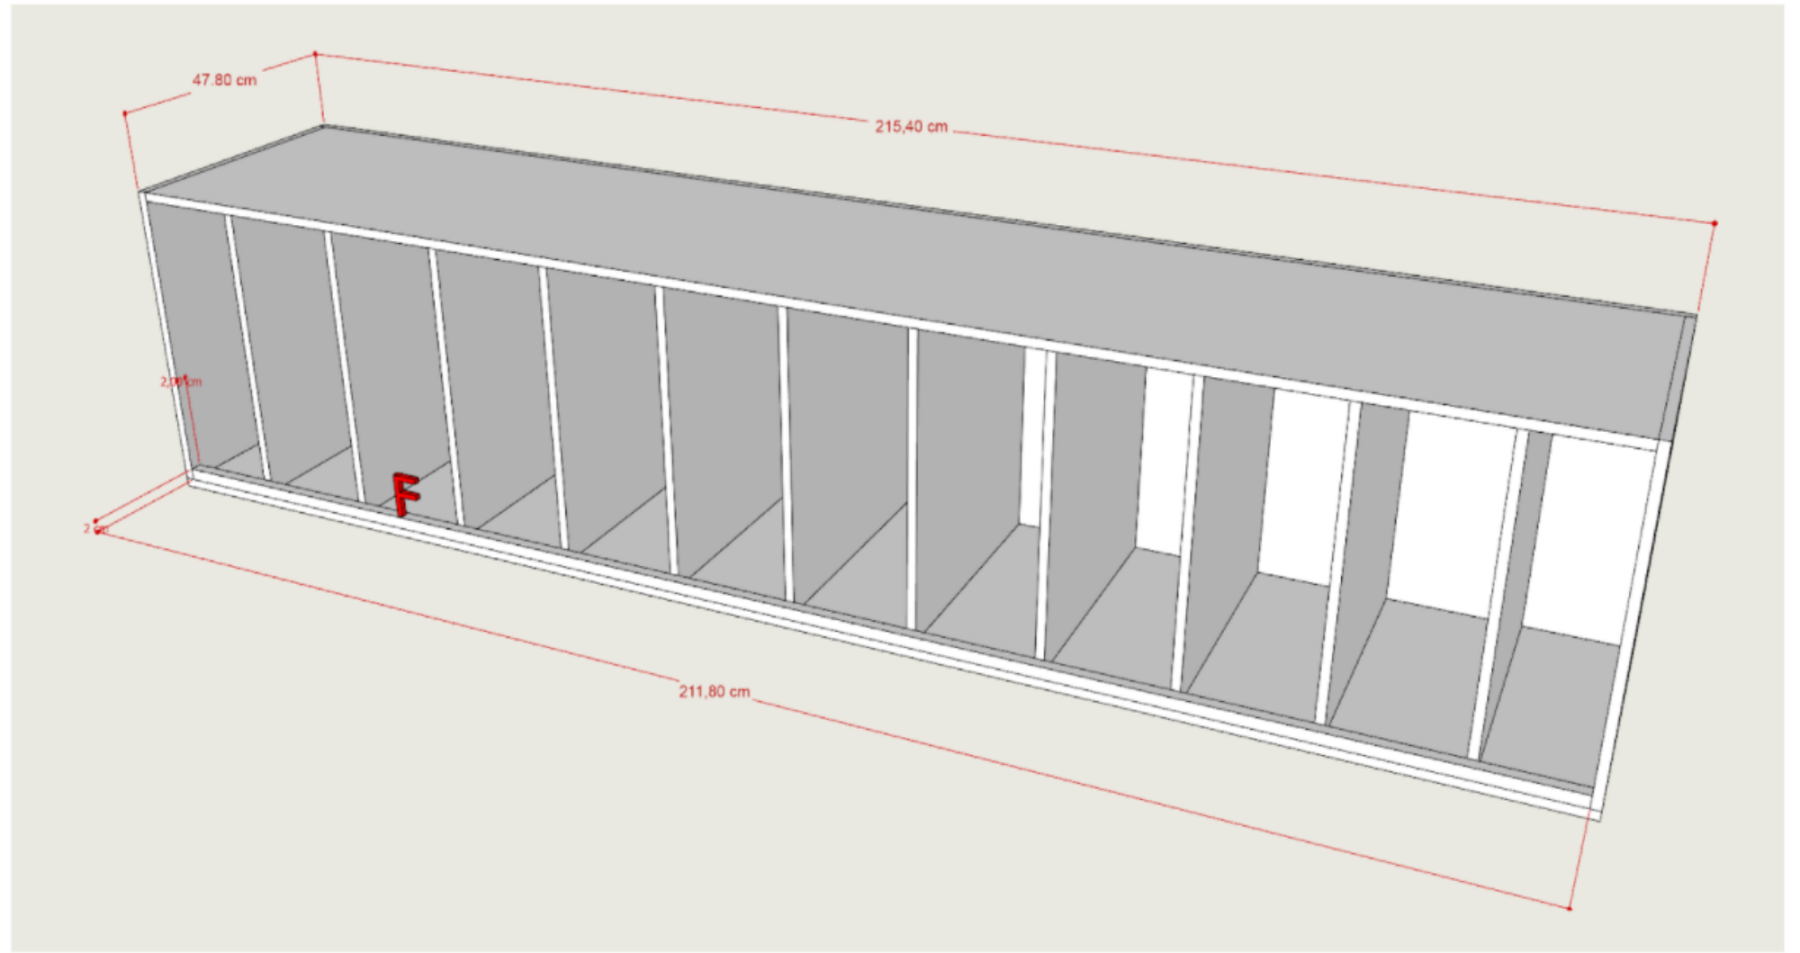 Comment créer un meuble de rangement pour son espace fitness (0m2) ?